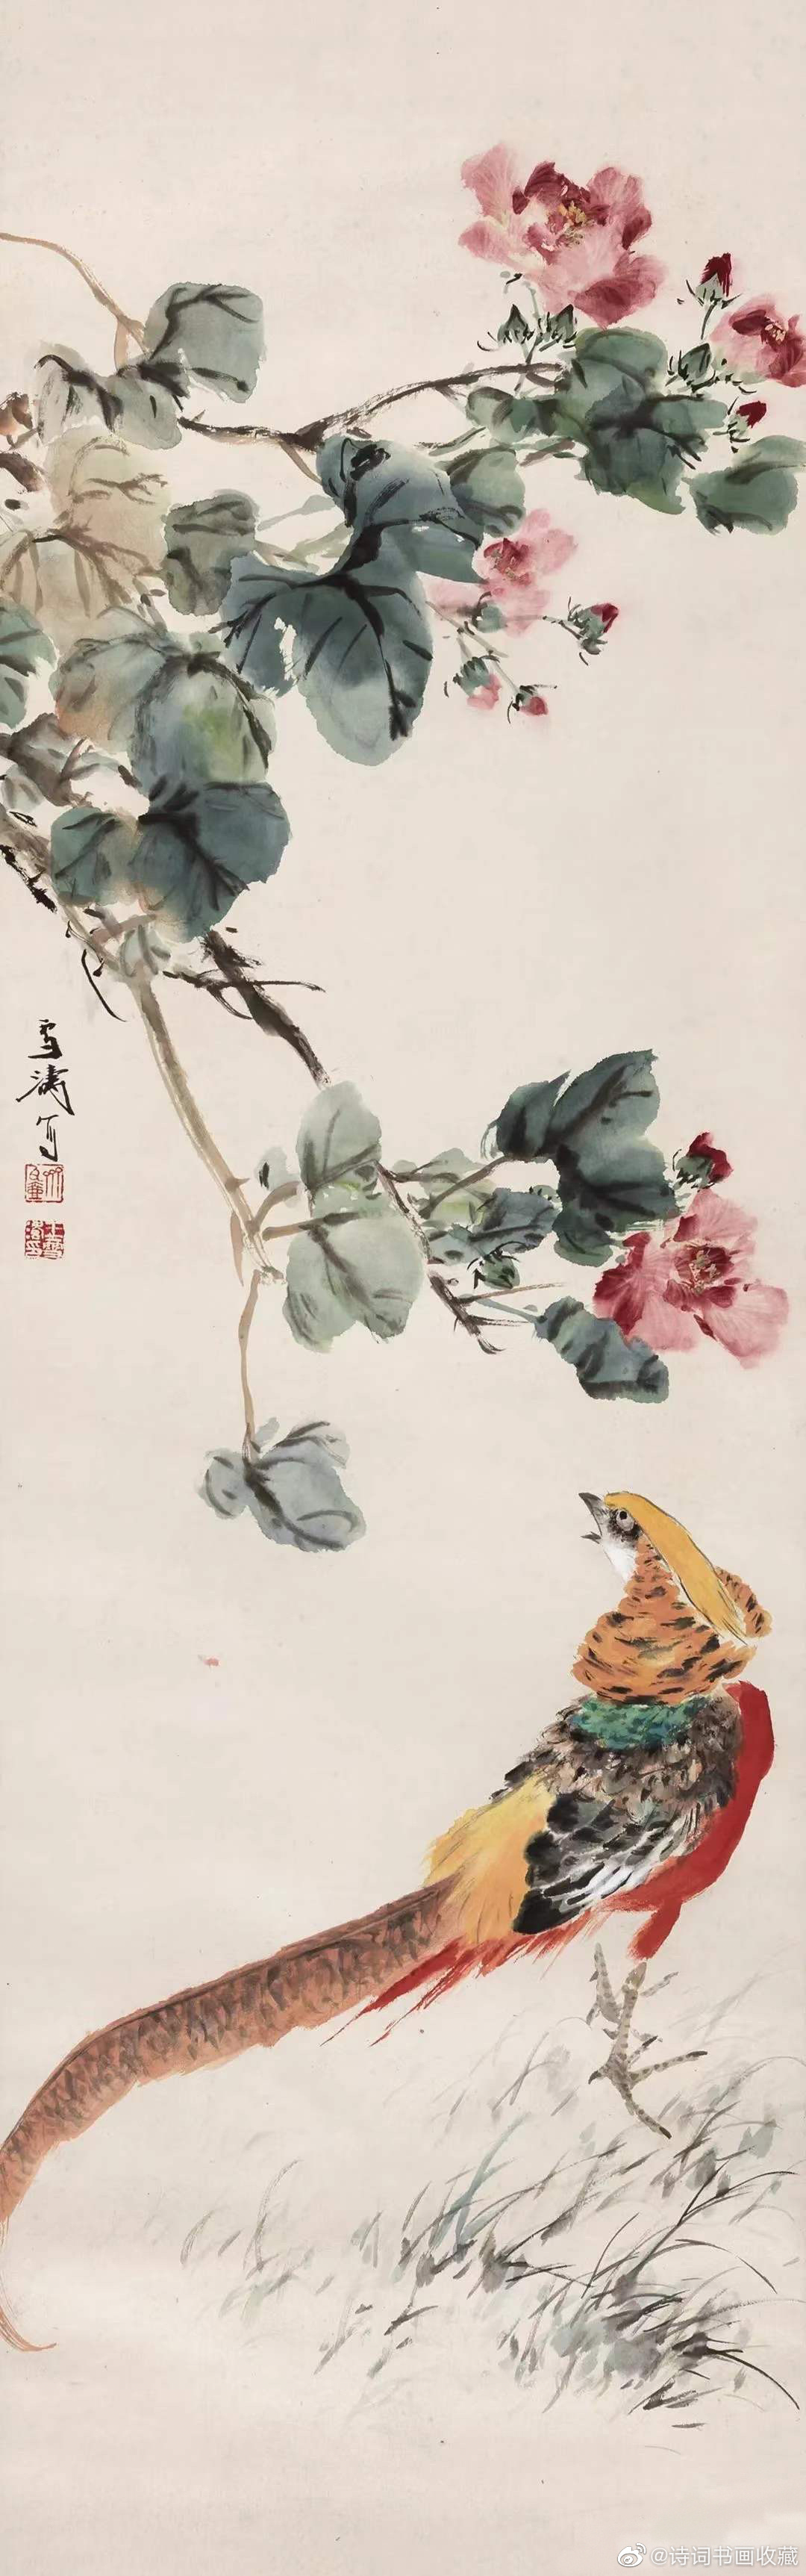 王雪涛花鸟精品欣赏!王雪涛,中国现代著名小写意花鸟画家.